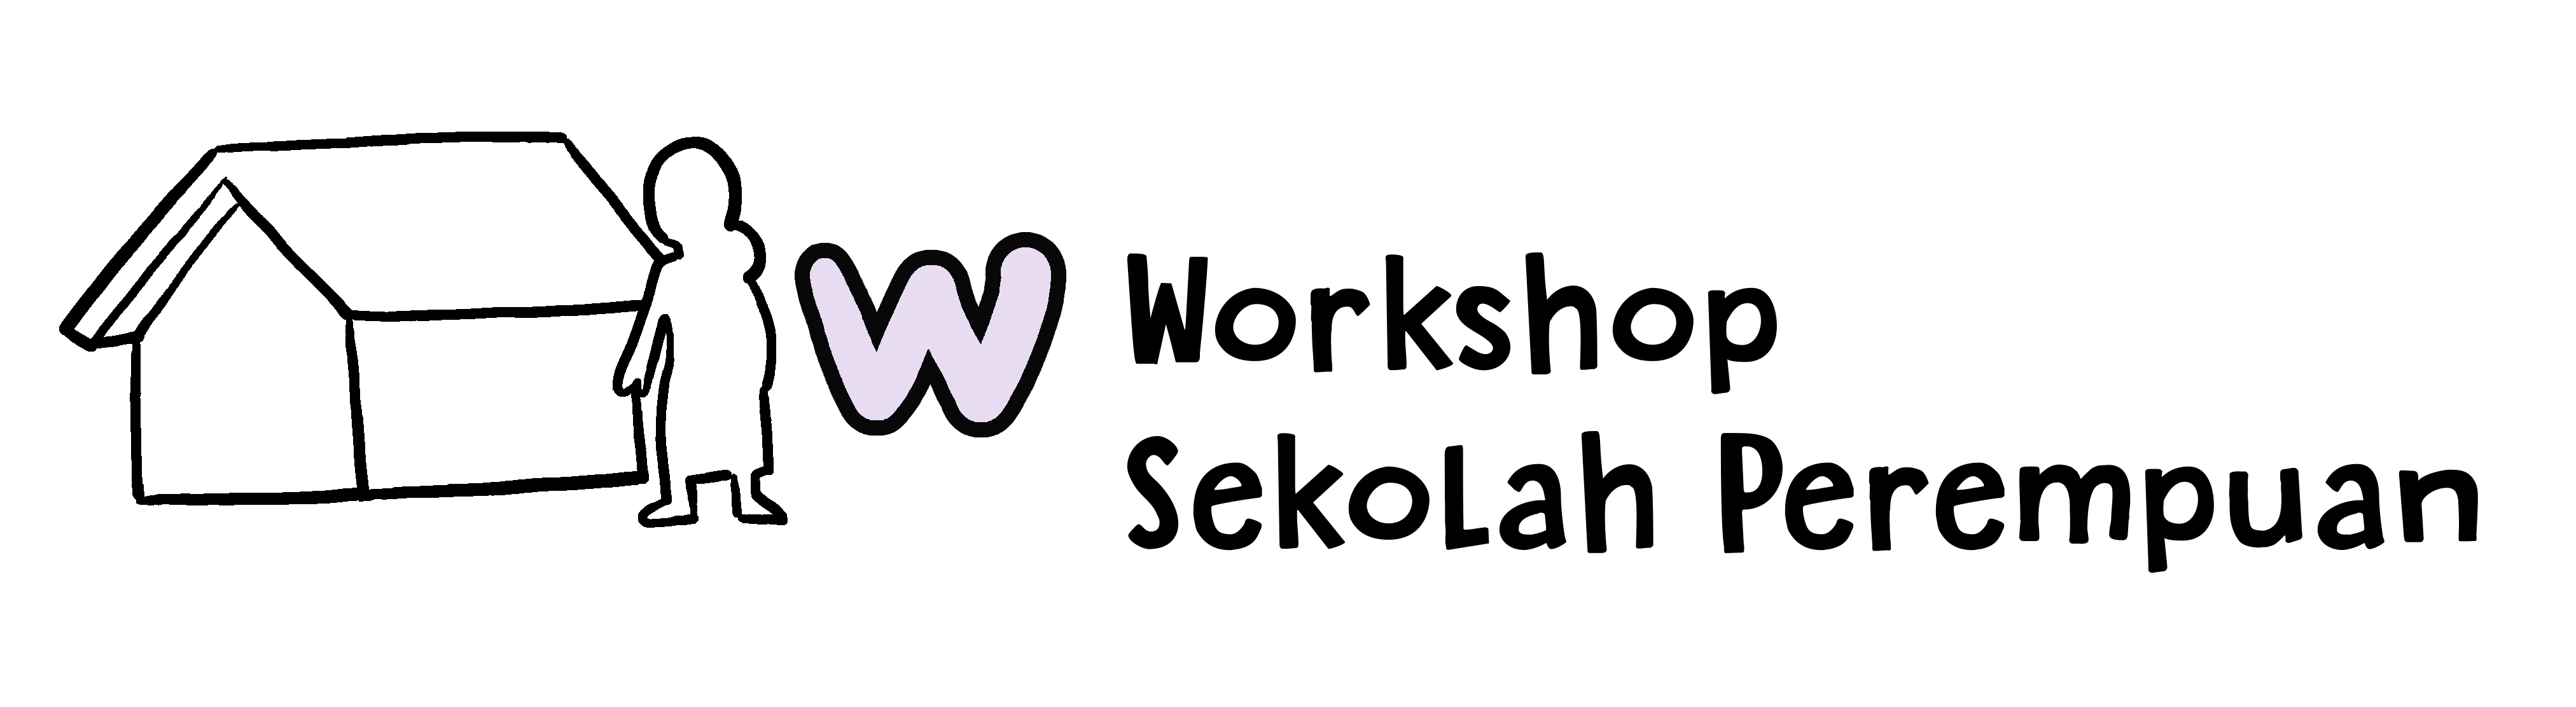 Workshop Sekolah Perempuan